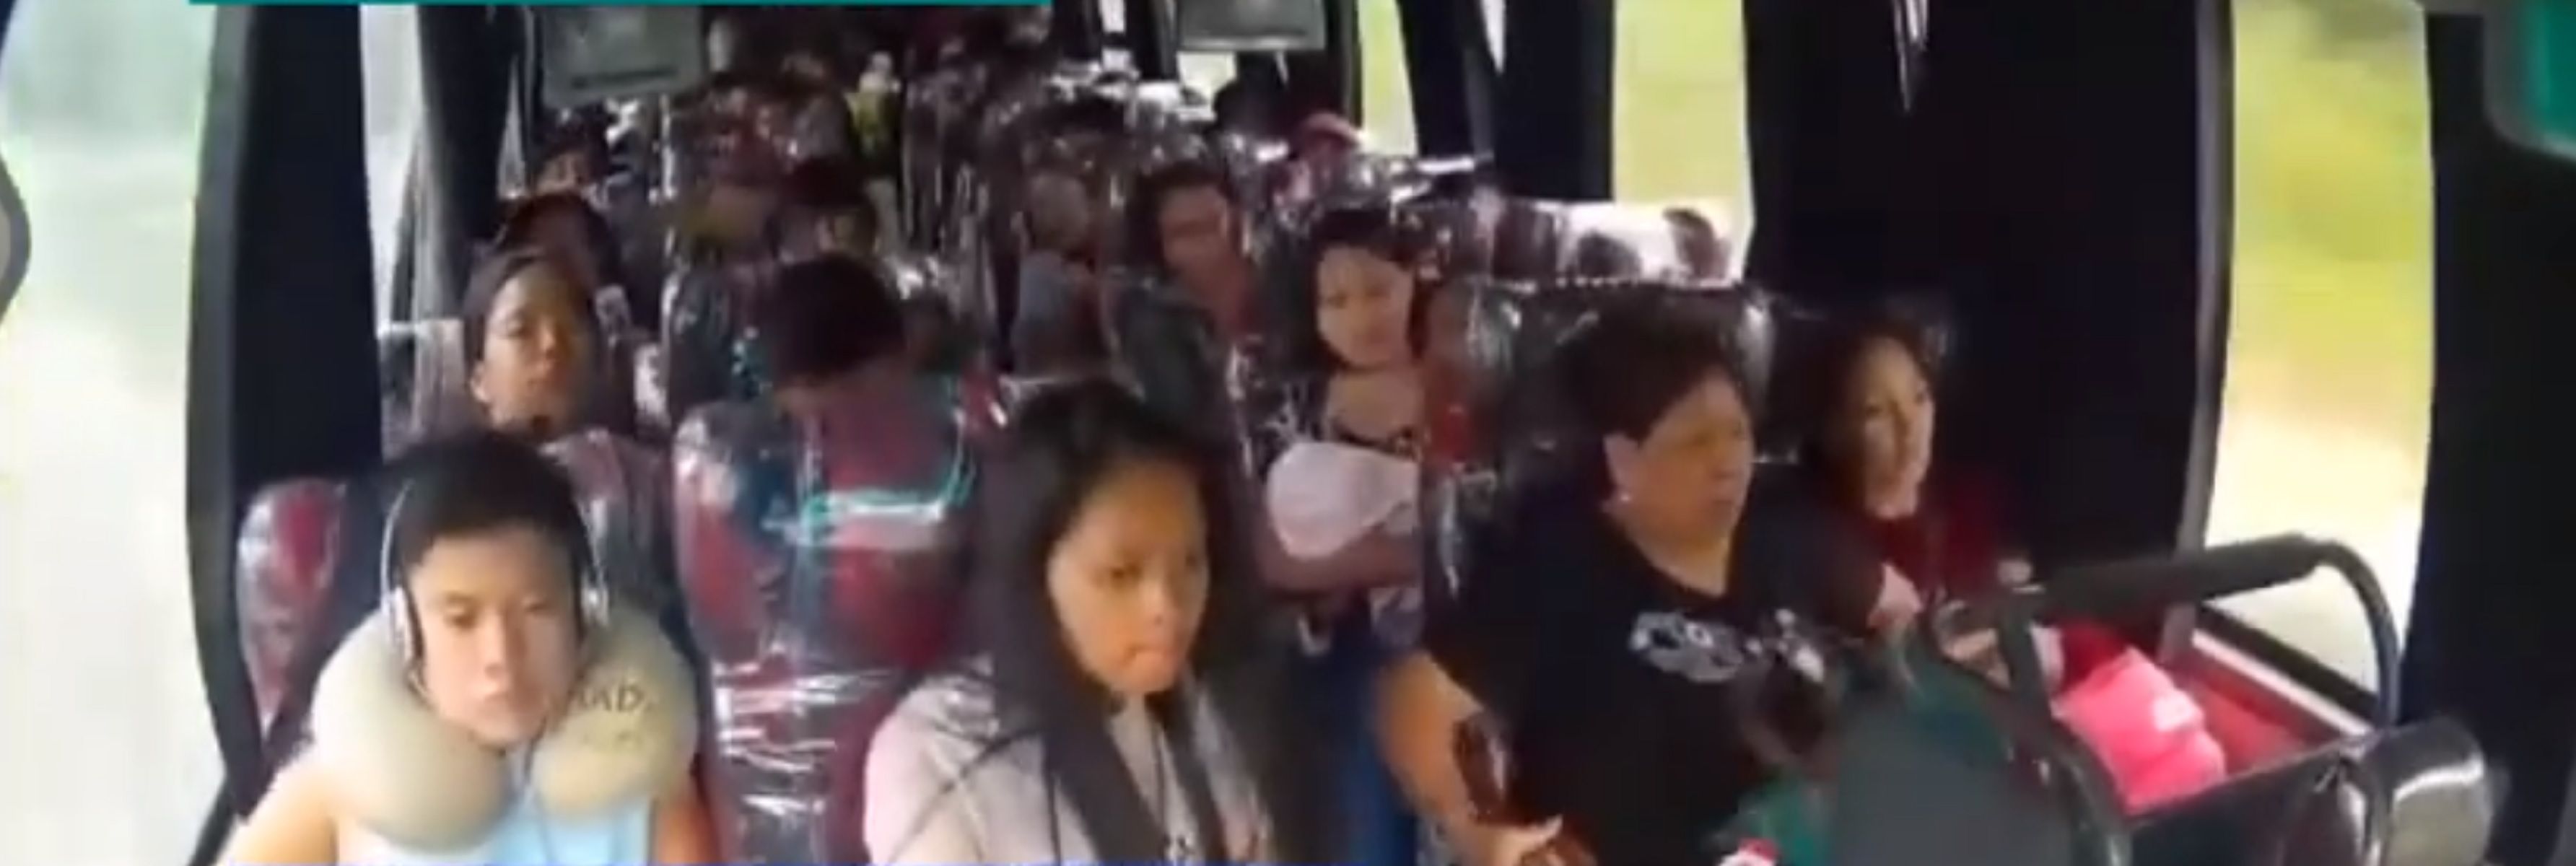 accidente autobus filipinas